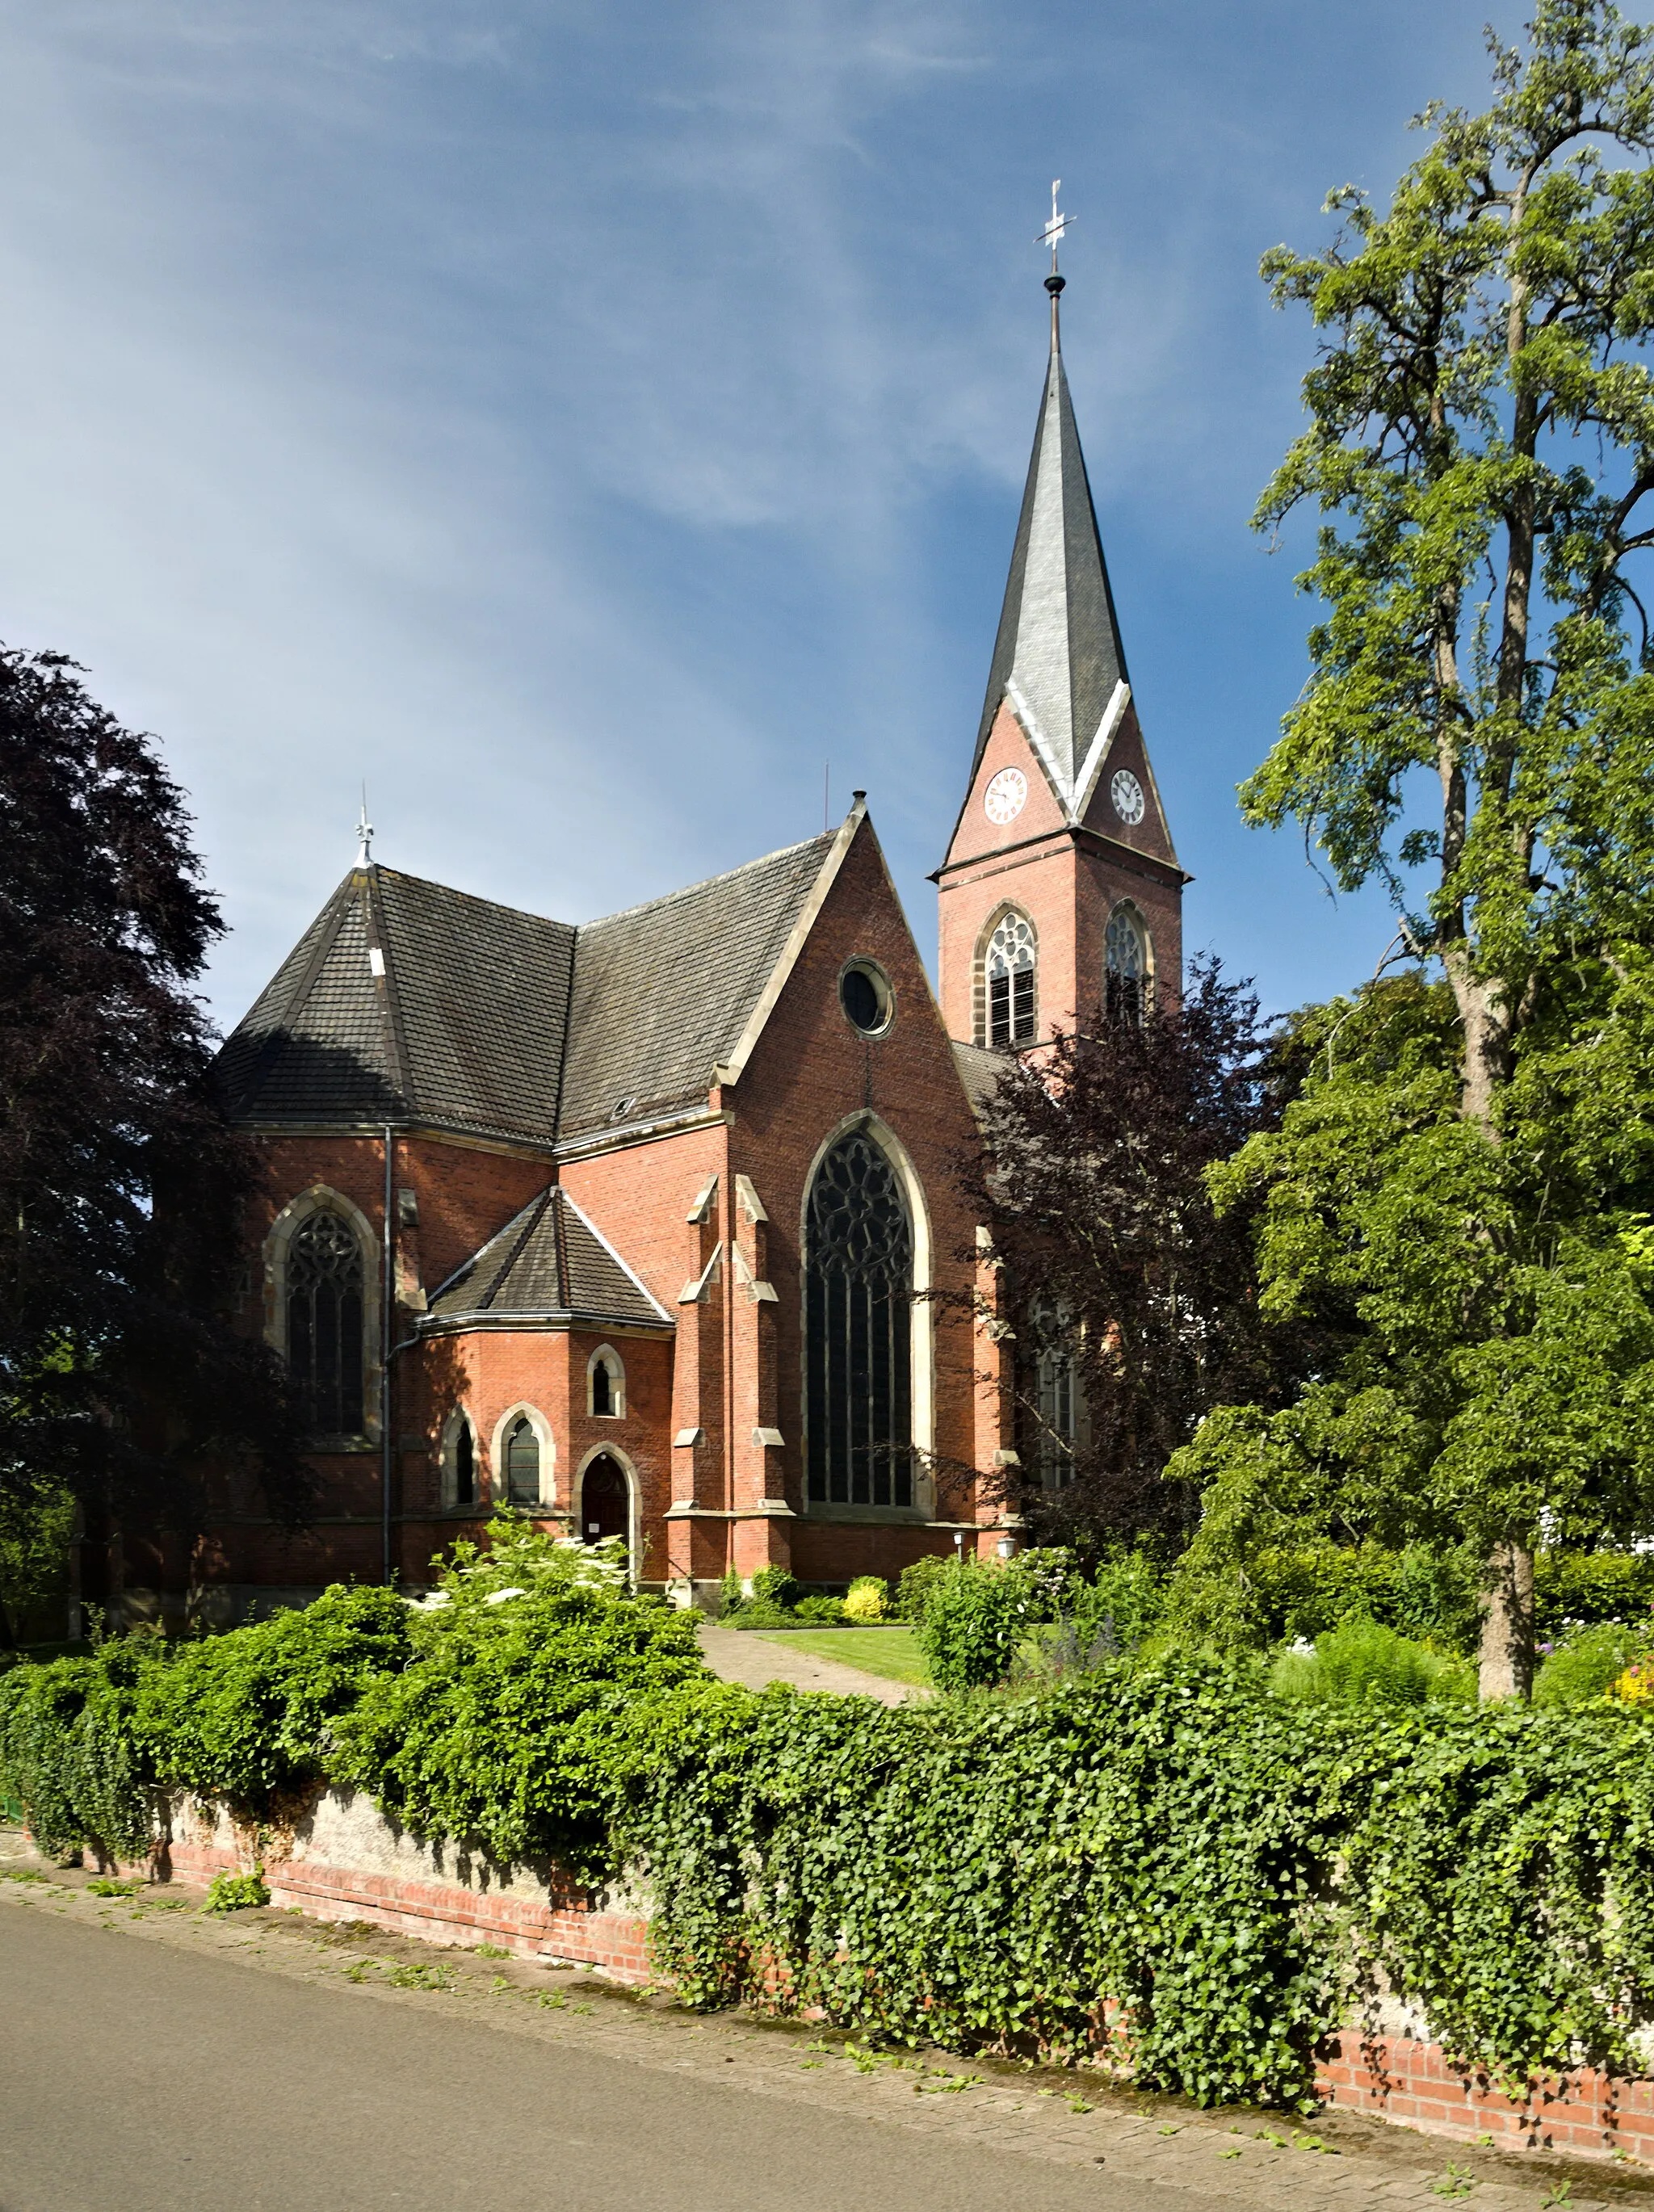 Photo showing: Nr. 31 in Petershagen
Ev. Pfarrkirche Lahde
An der Kirche 1
32469 Petershagen

52.369881,8.991828